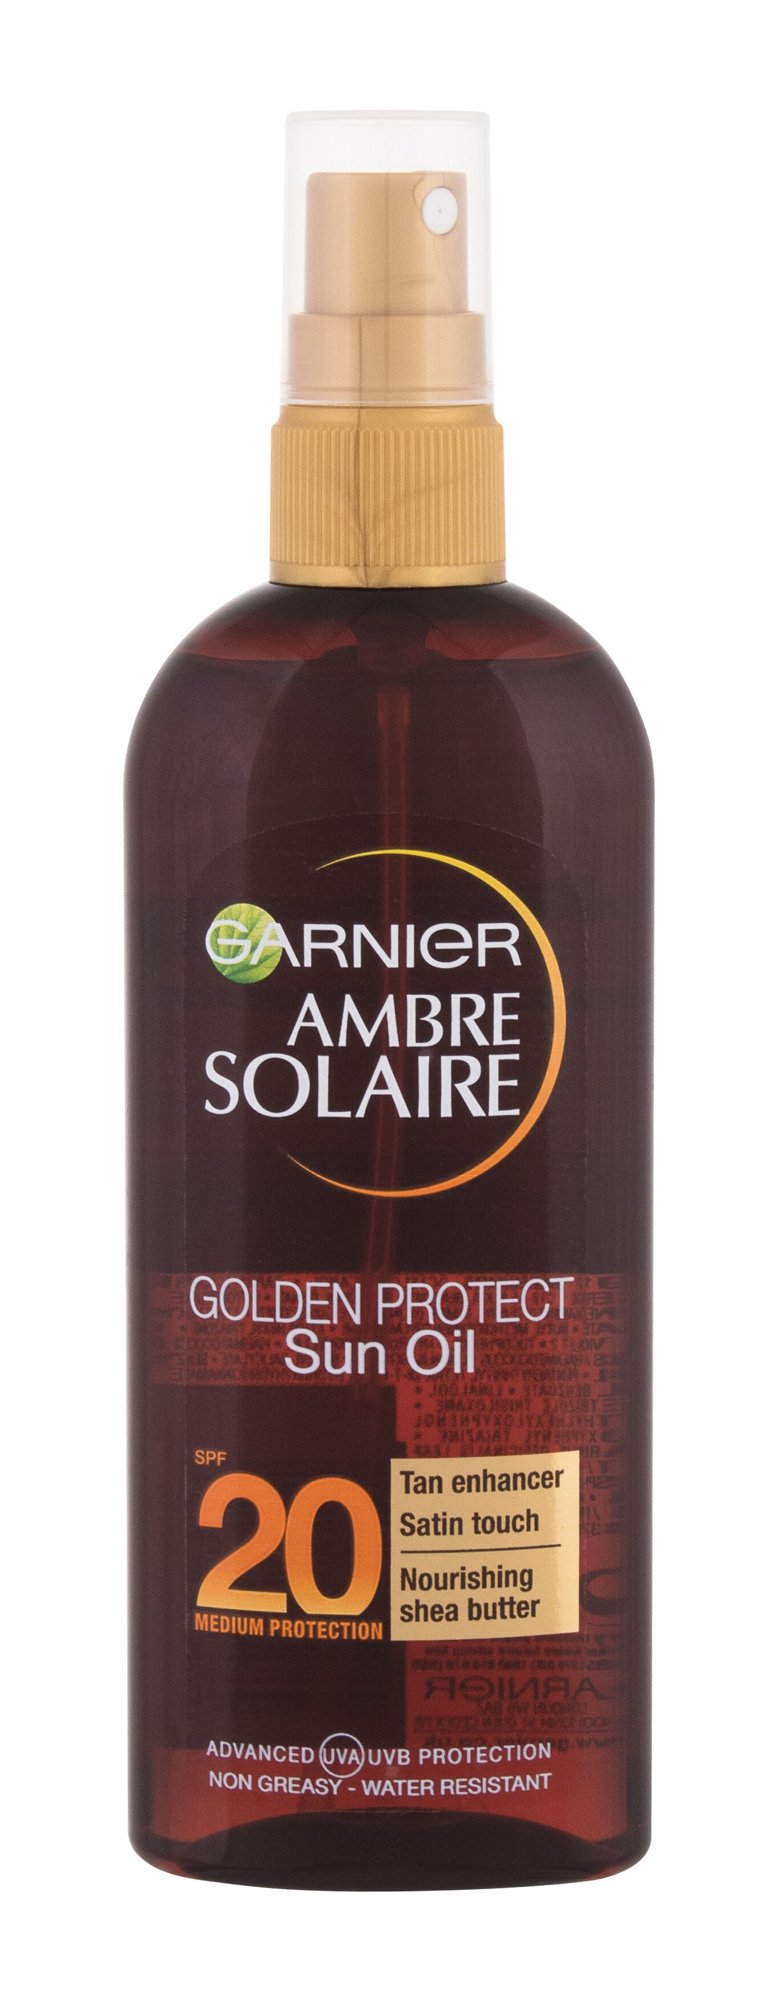 Garnier Ambre Solaire Golden Protect įdegio losjonas